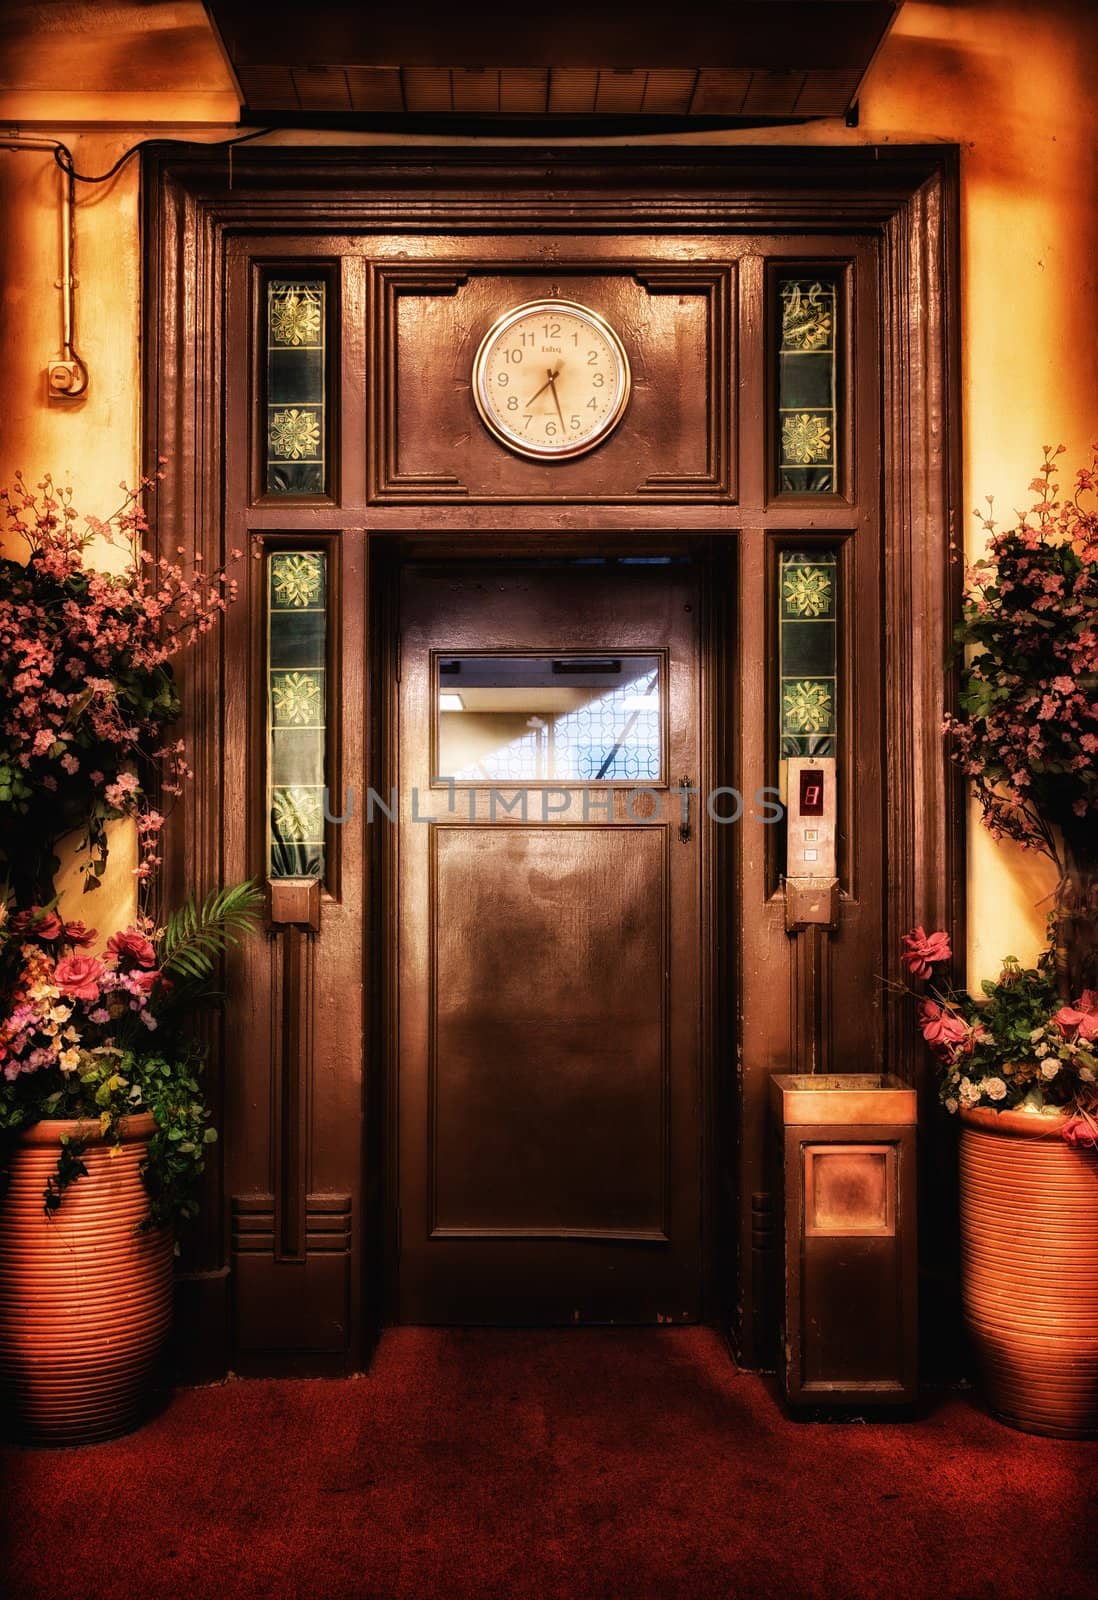 old vintage elevator door in the lobby